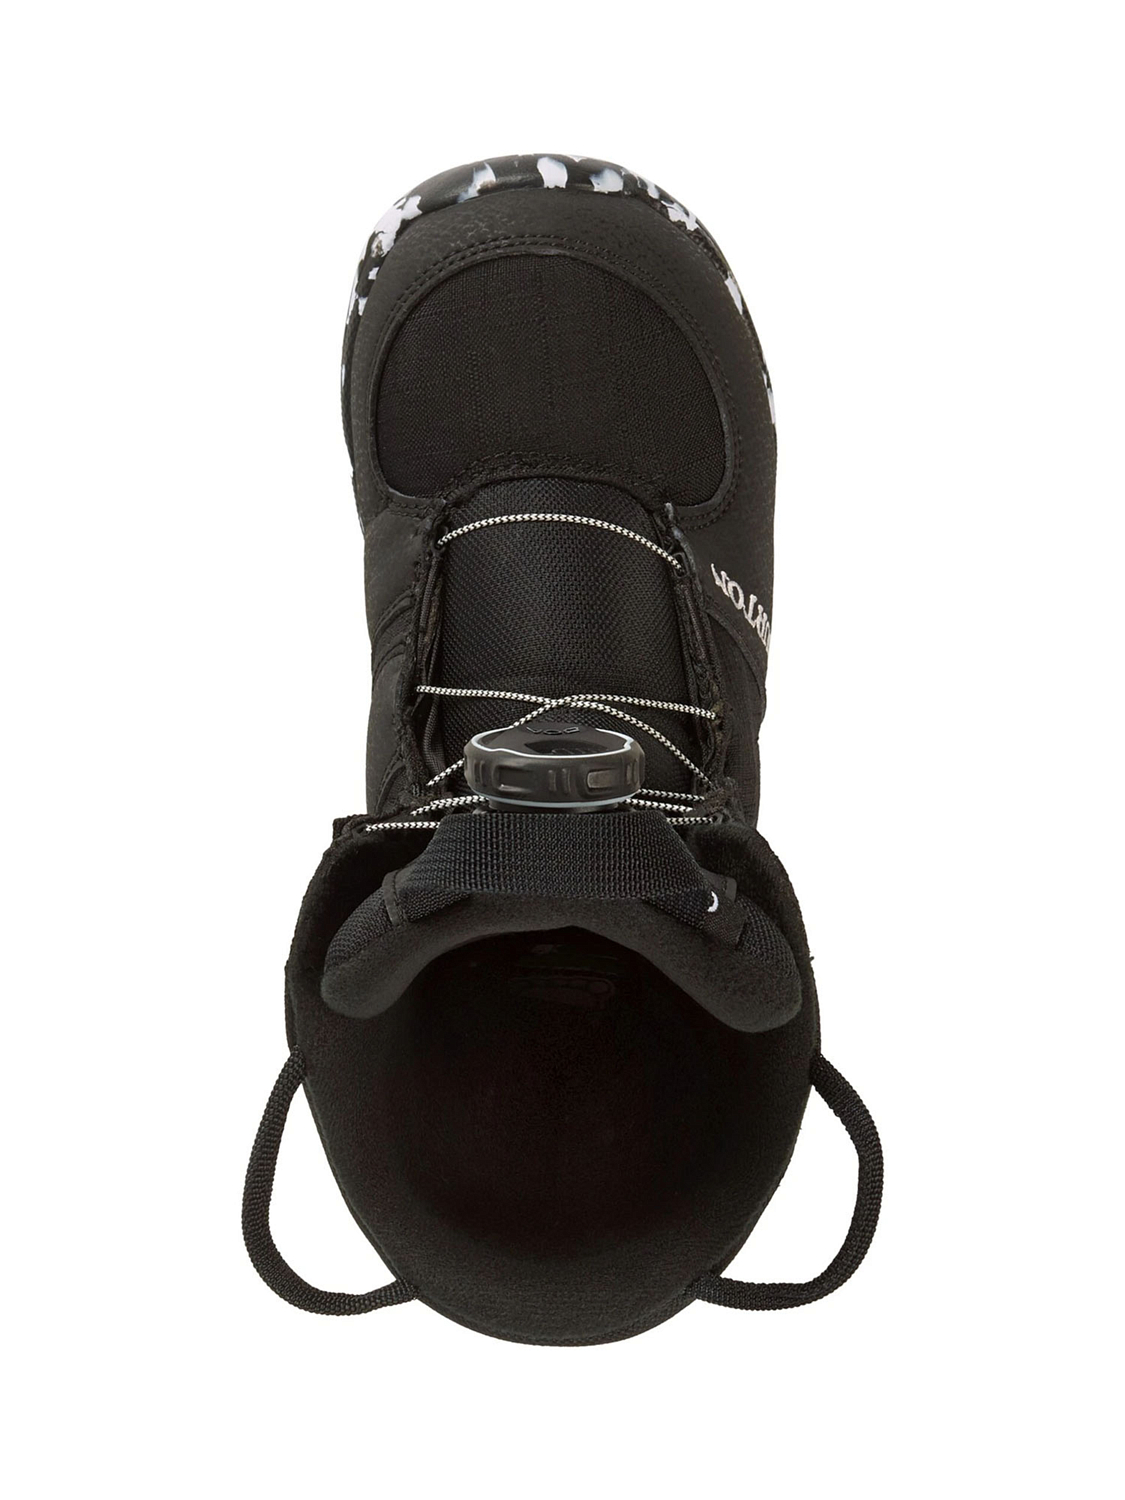 Ботинки для сноуборда детские BURTON Grom Boa Black